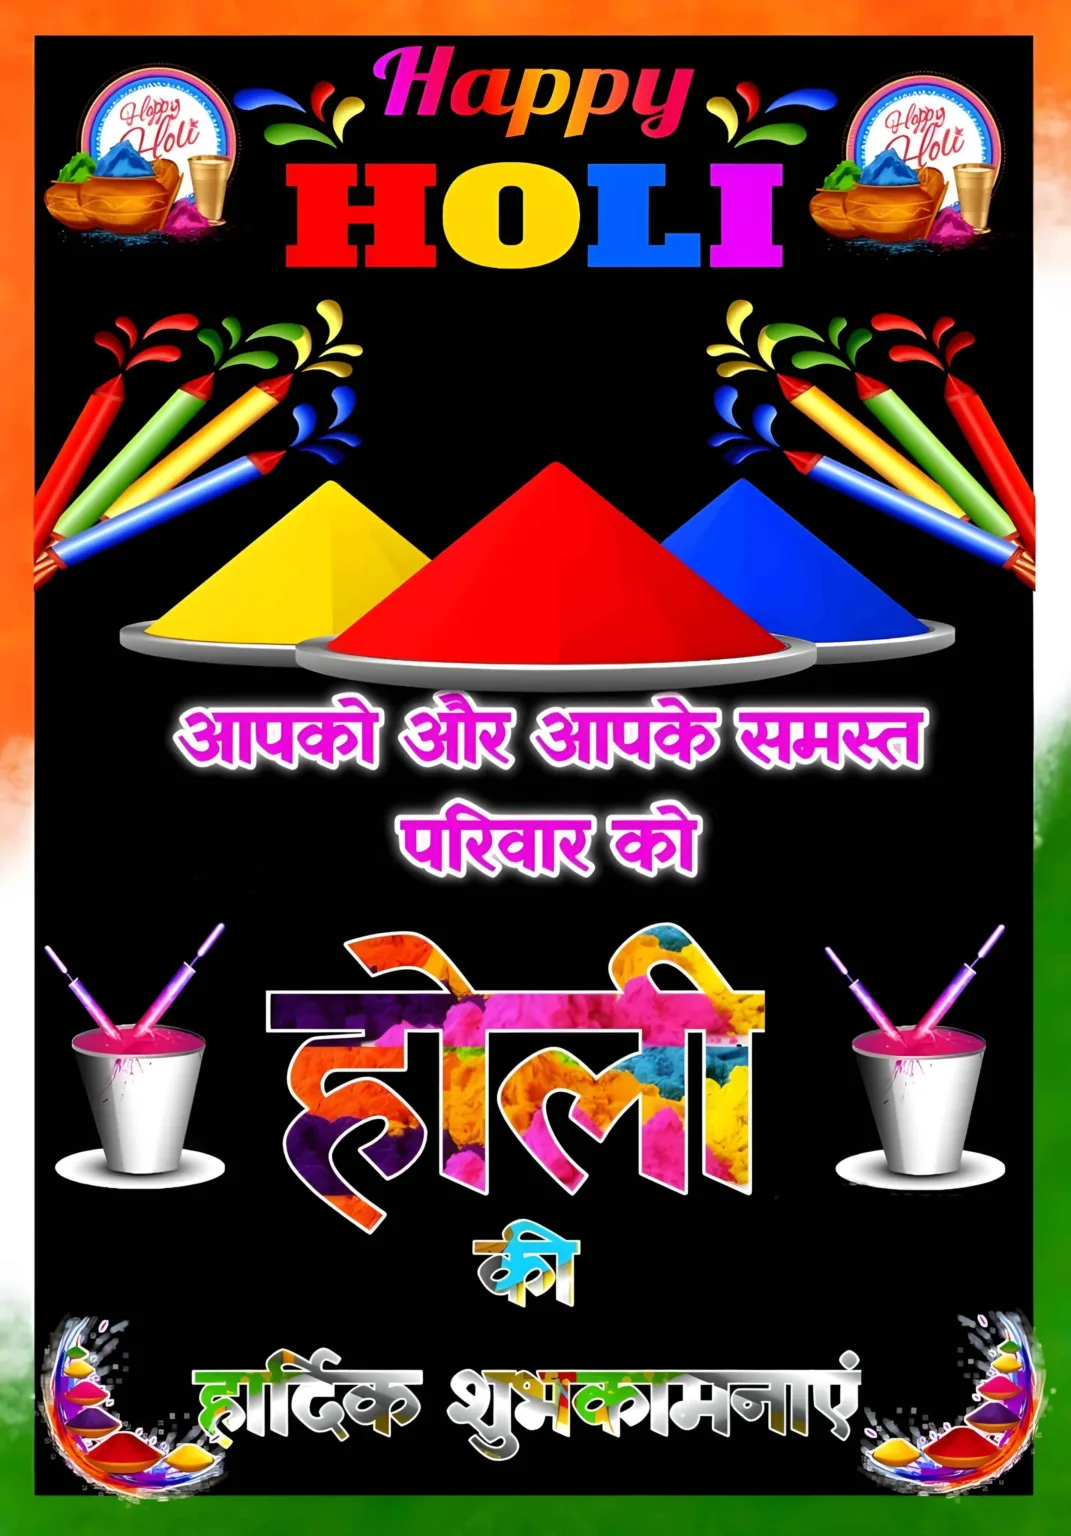 Happy Holi Wishes in Hindi Image full HD